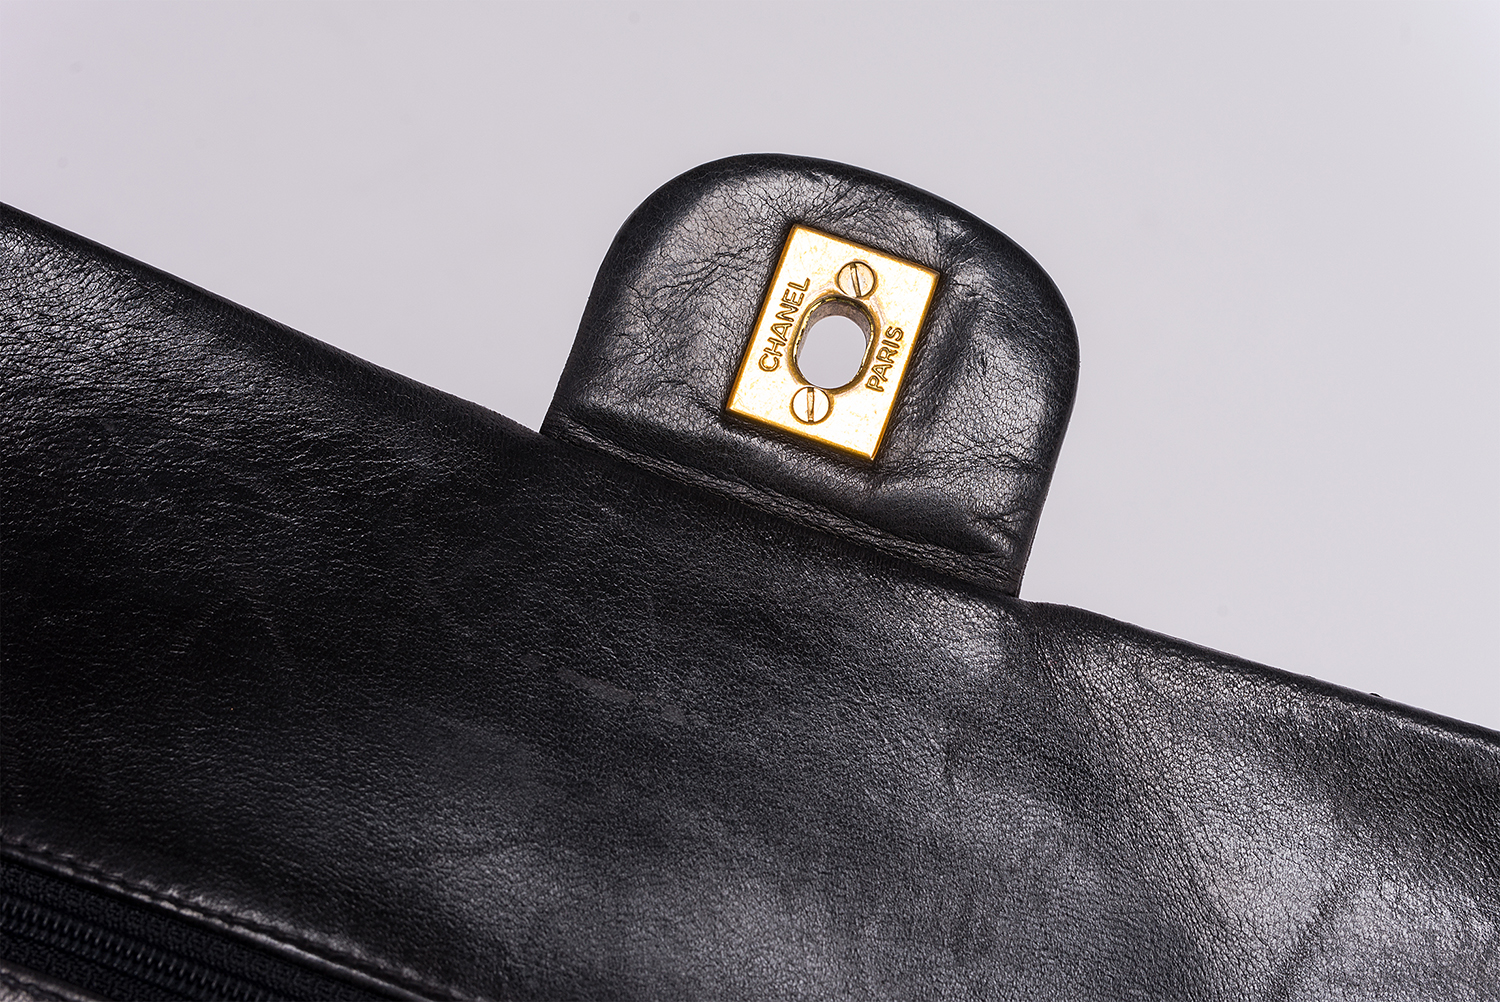 Sac à main Chanel Timeless Classique Authentique d'occasion en cuir matelassé noir et bijouterie dorée